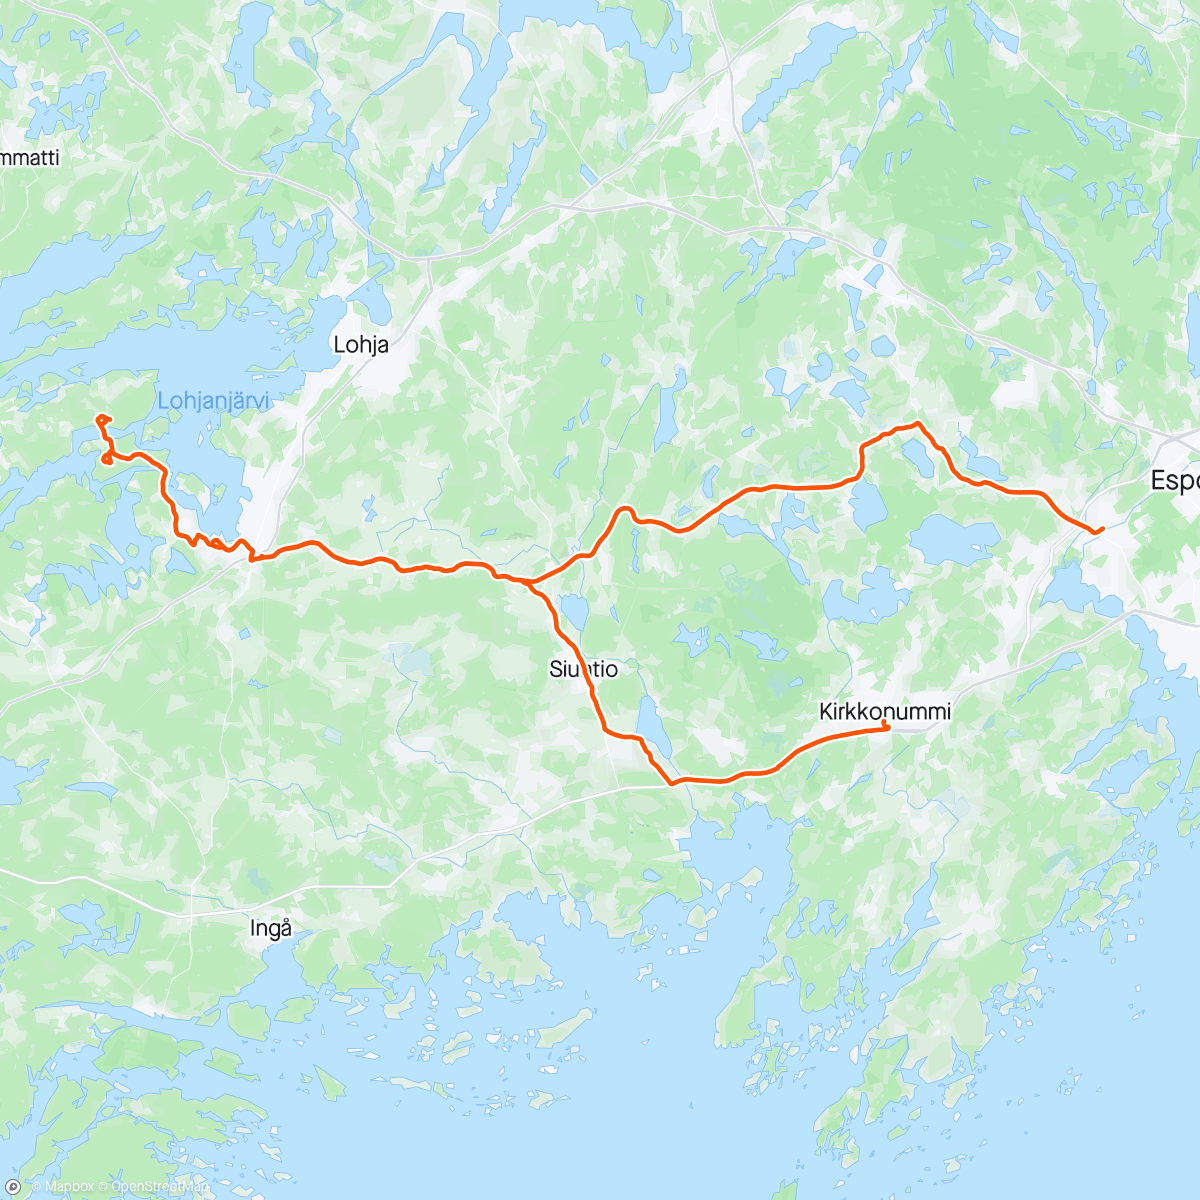 Map of the activity, Jättelångsamt